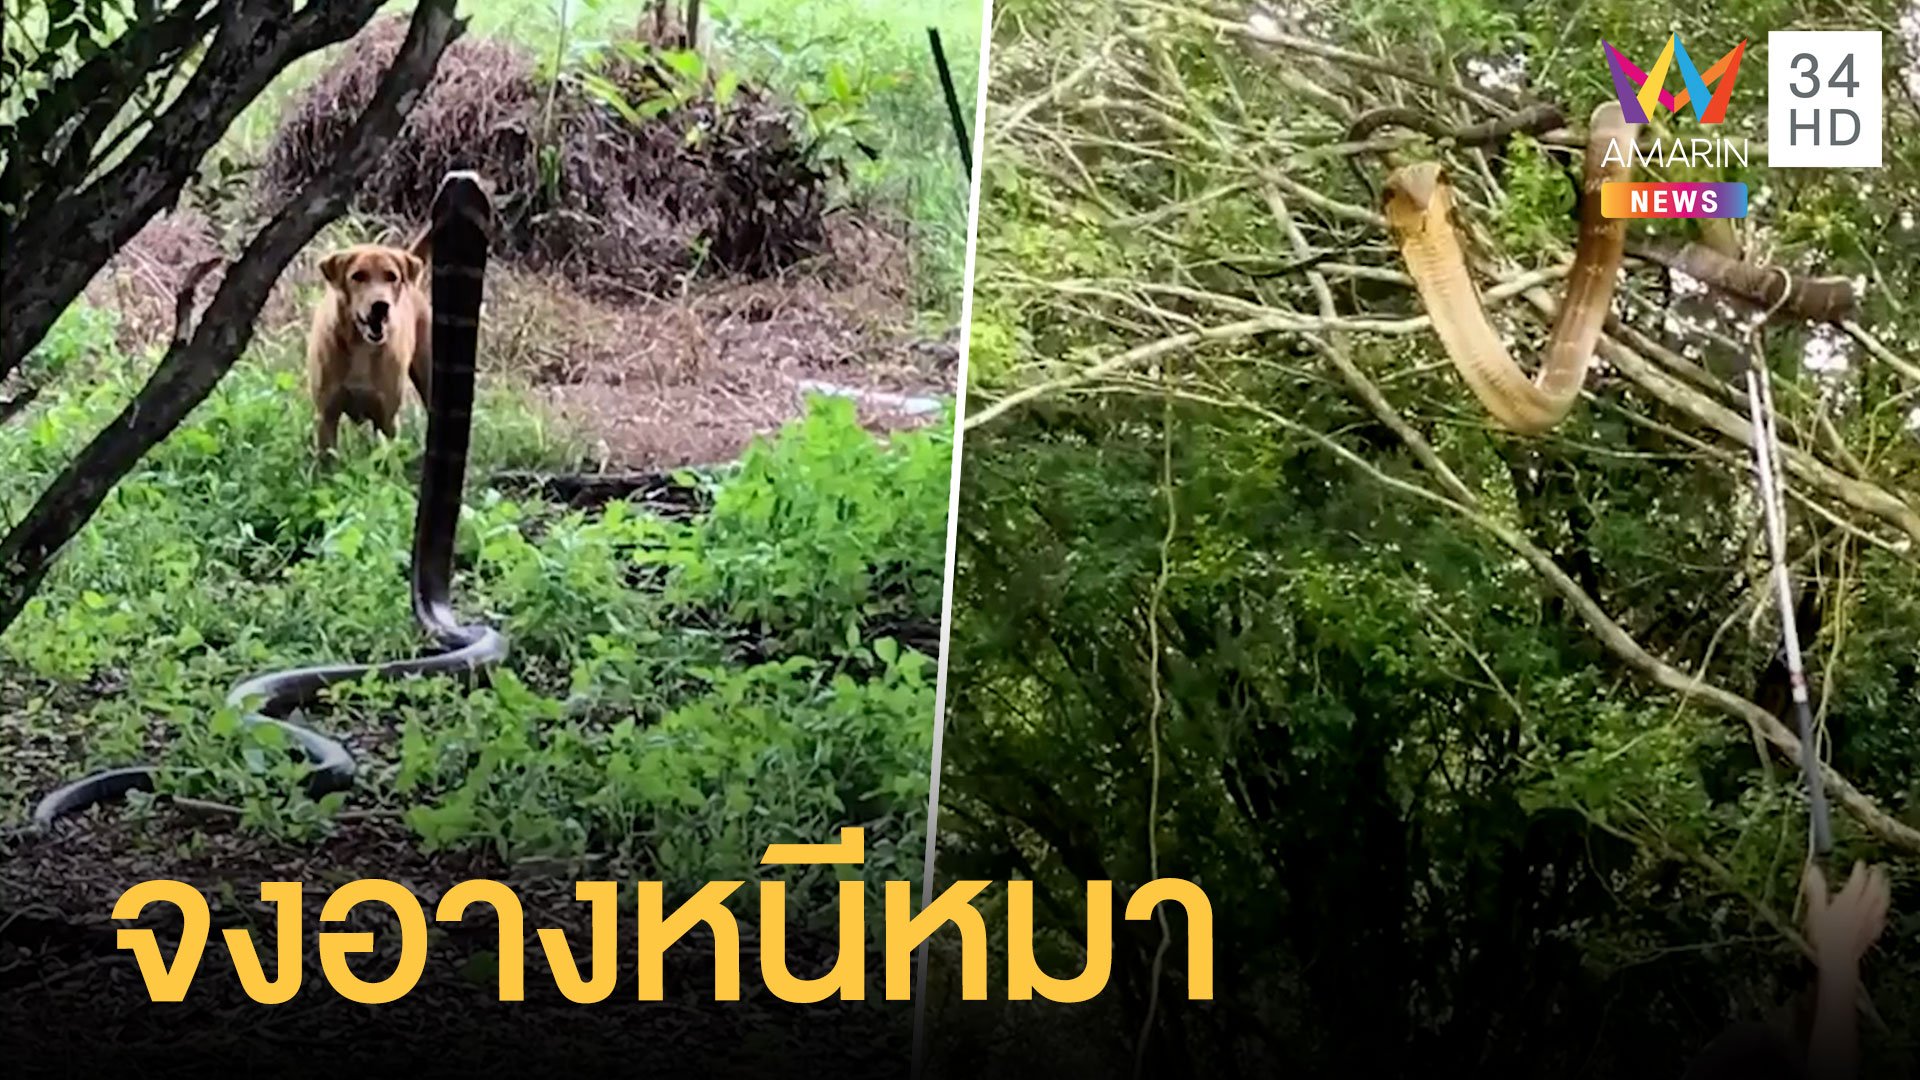 งูจงอางยาว 3 เมตร หนีหมาขึ้นต้นไม้ | ข่าวอรุณอมรินทร์ | 12 เม.ย. 64 | AMARIN TVHD34